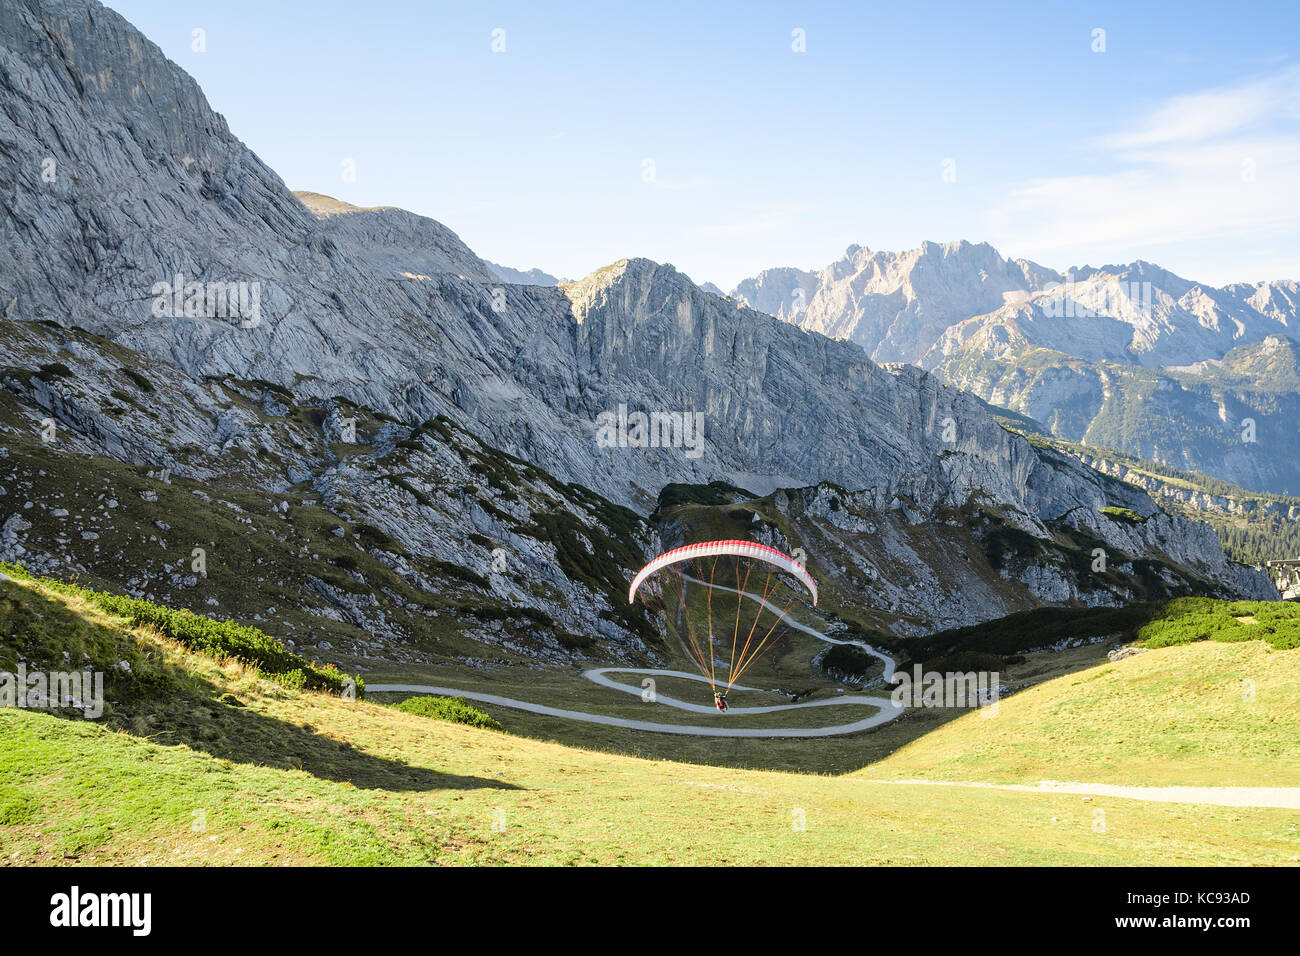 Paysage alpin avec parapente vol stationnaire dans les montagnes des Alpes bavaroises Banque D'Images